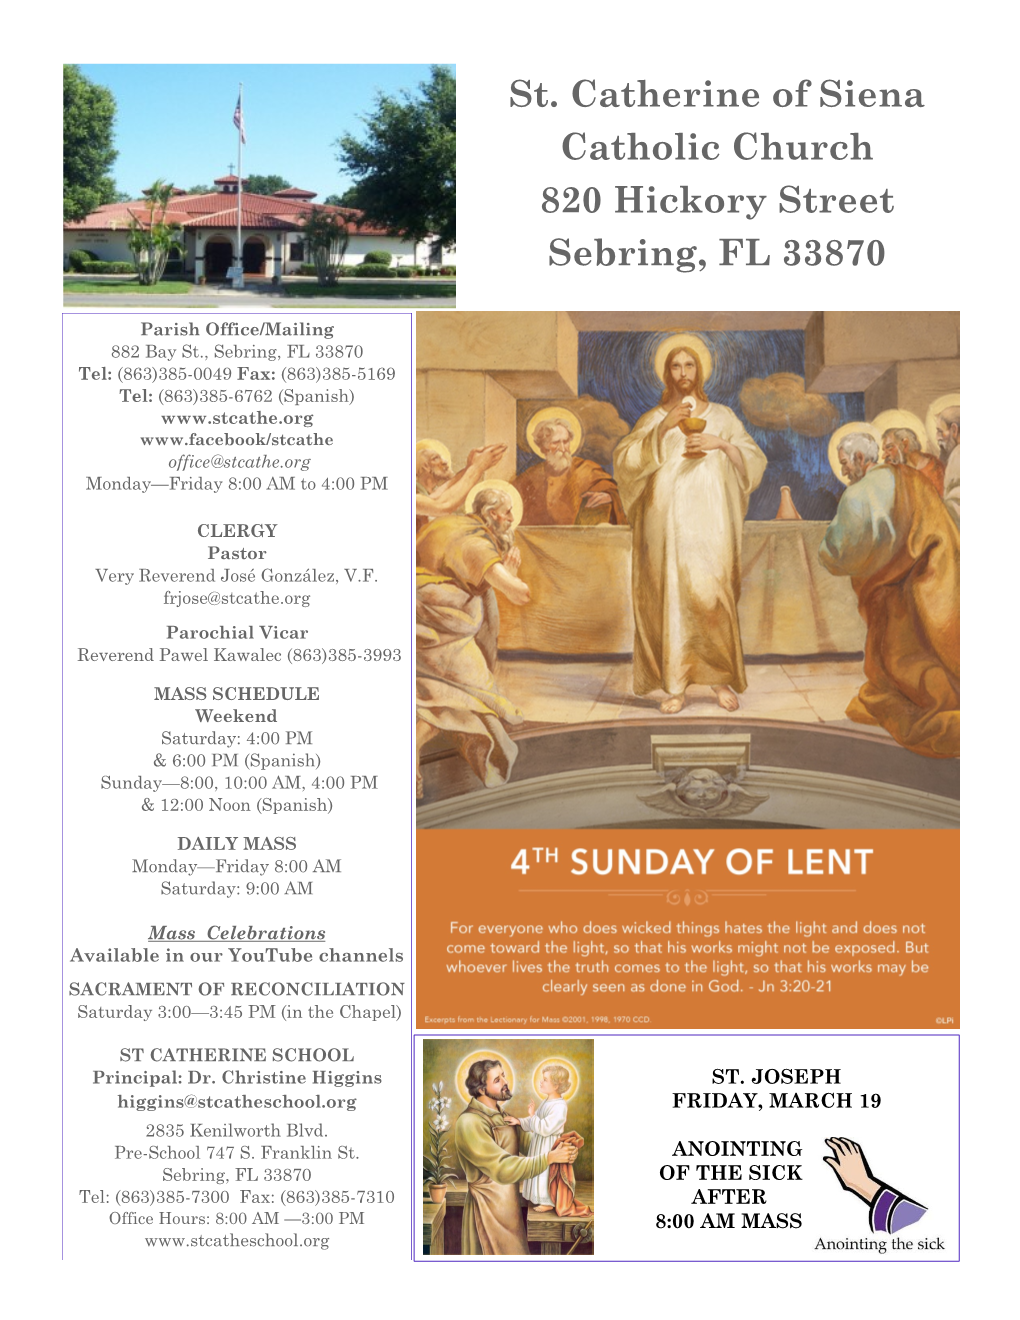 St. Catherine of Siena Catholic Church 820 Hickory Street Sebring, FL 33870